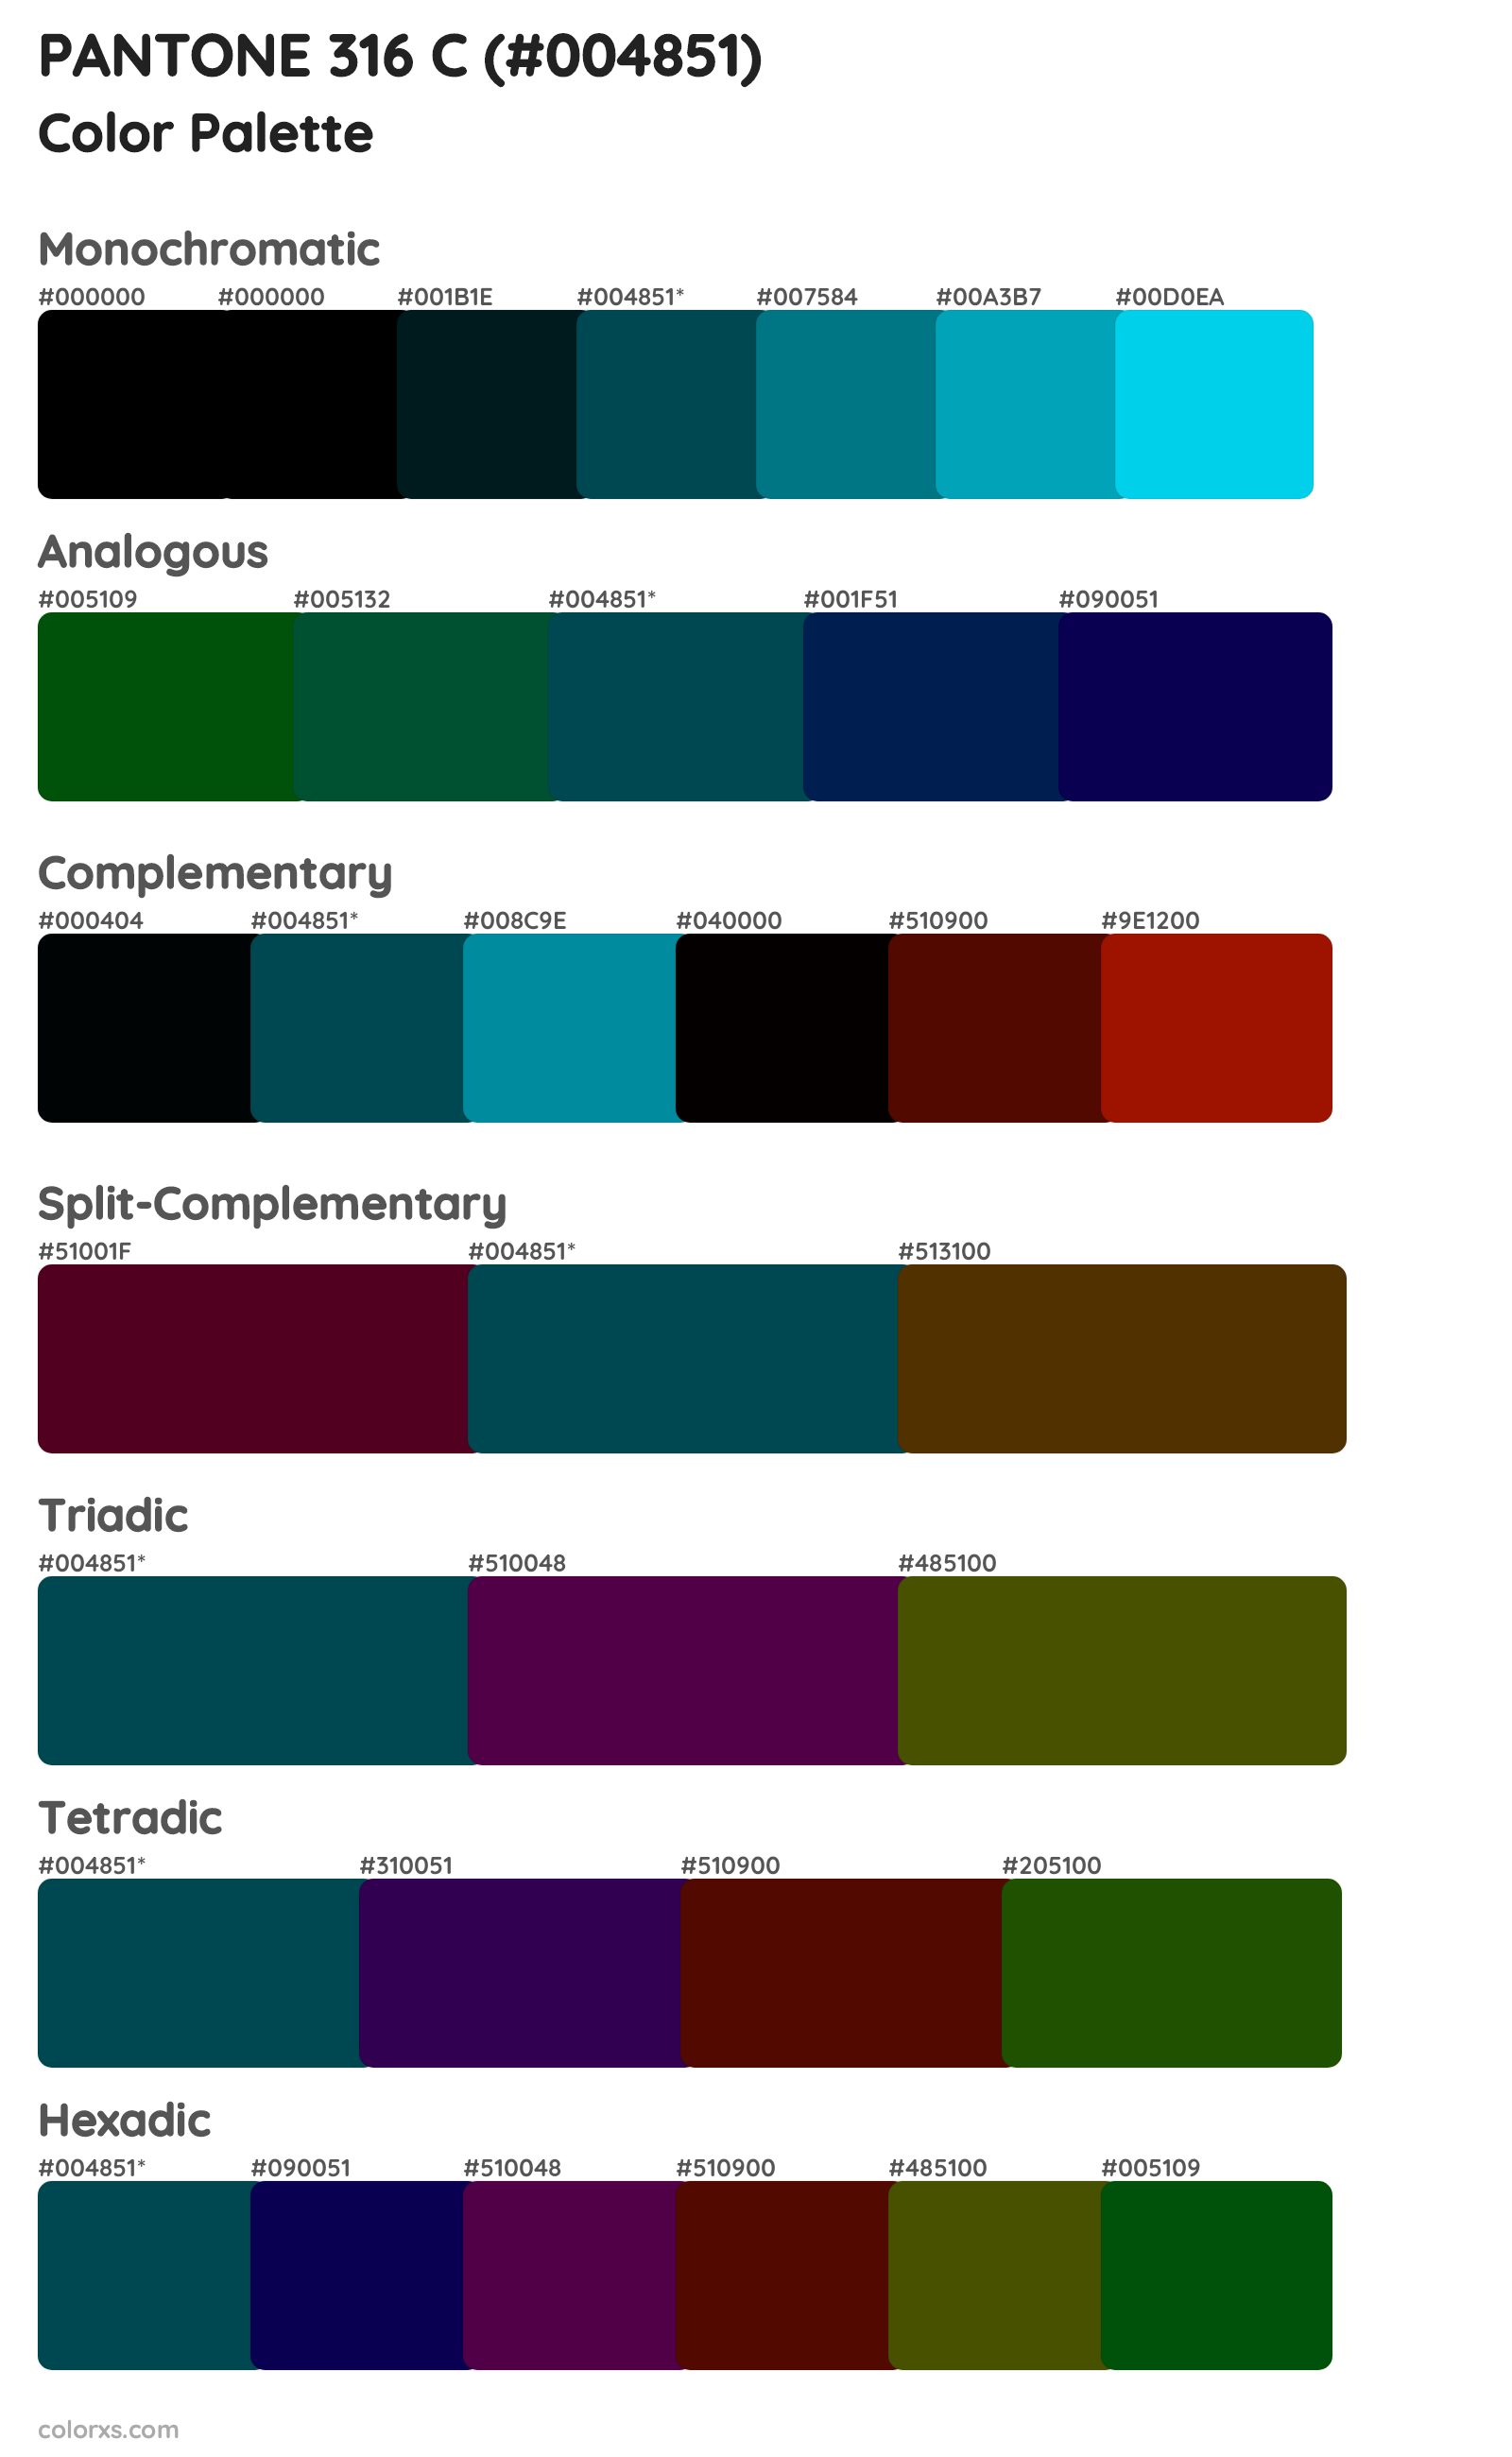 PANTONE 316 C Color Scheme Palettes